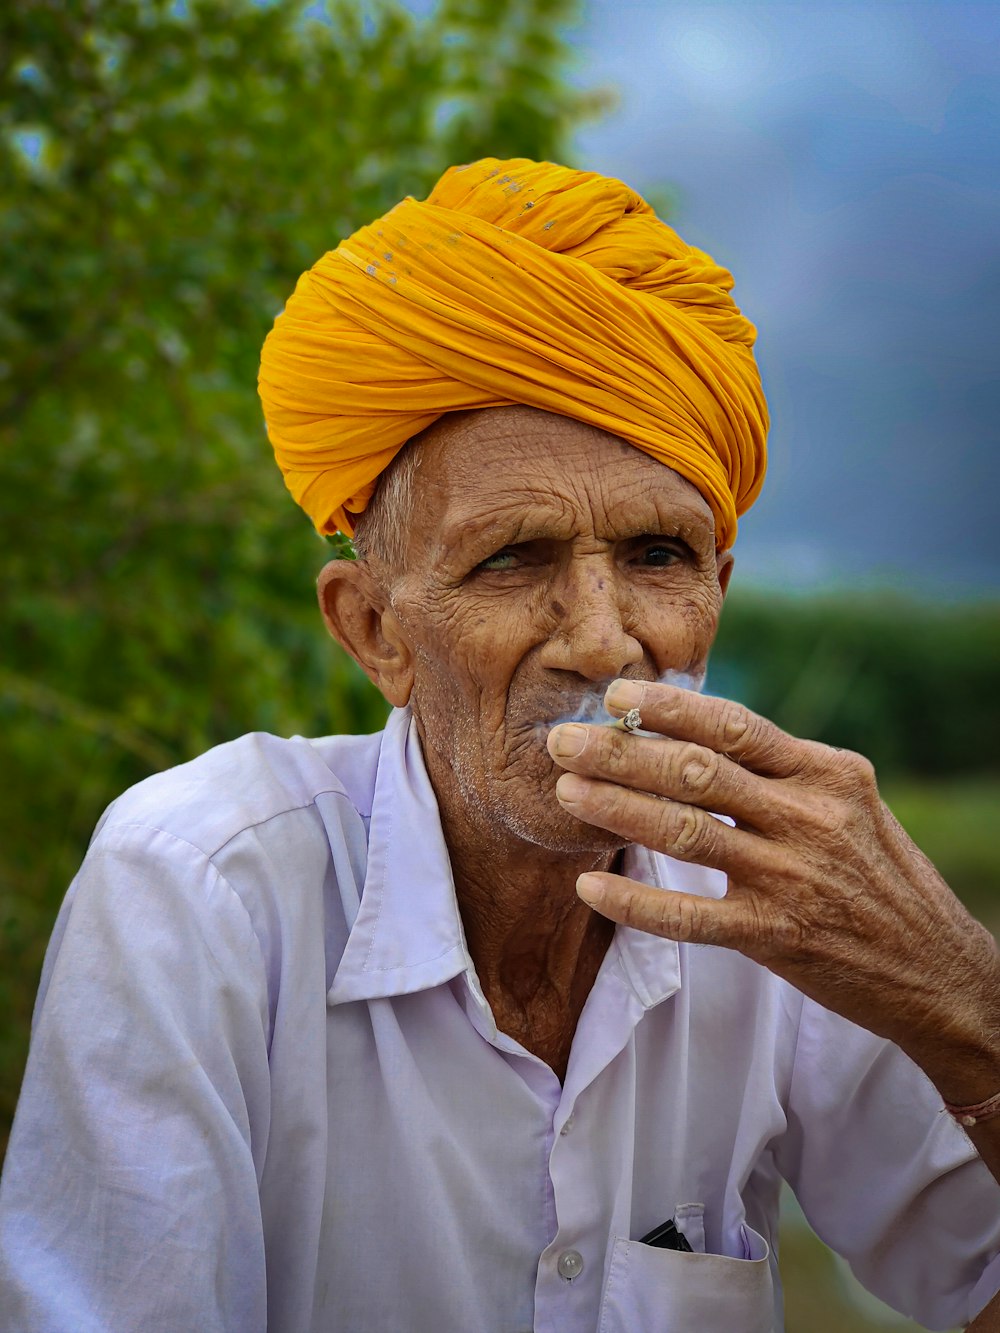 ein Mann mit gelbem Turban raucht eine Zigarette